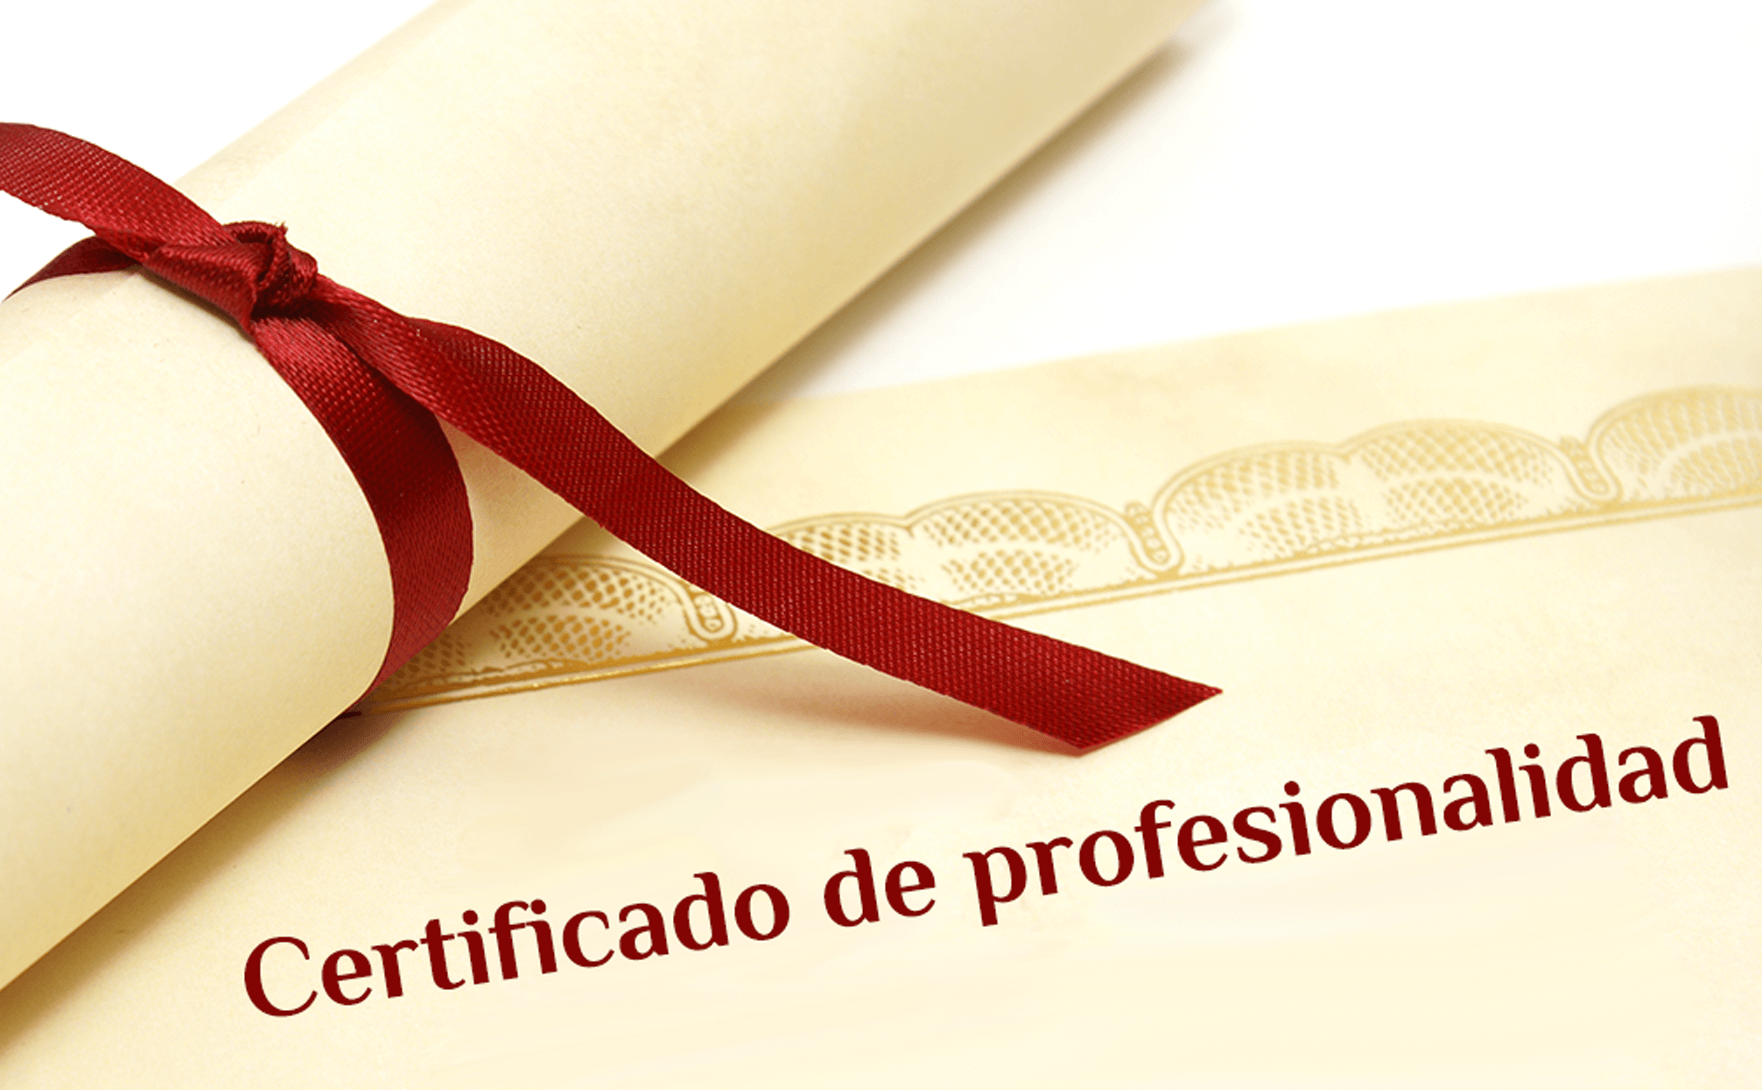 certificado-de-profesionalidad